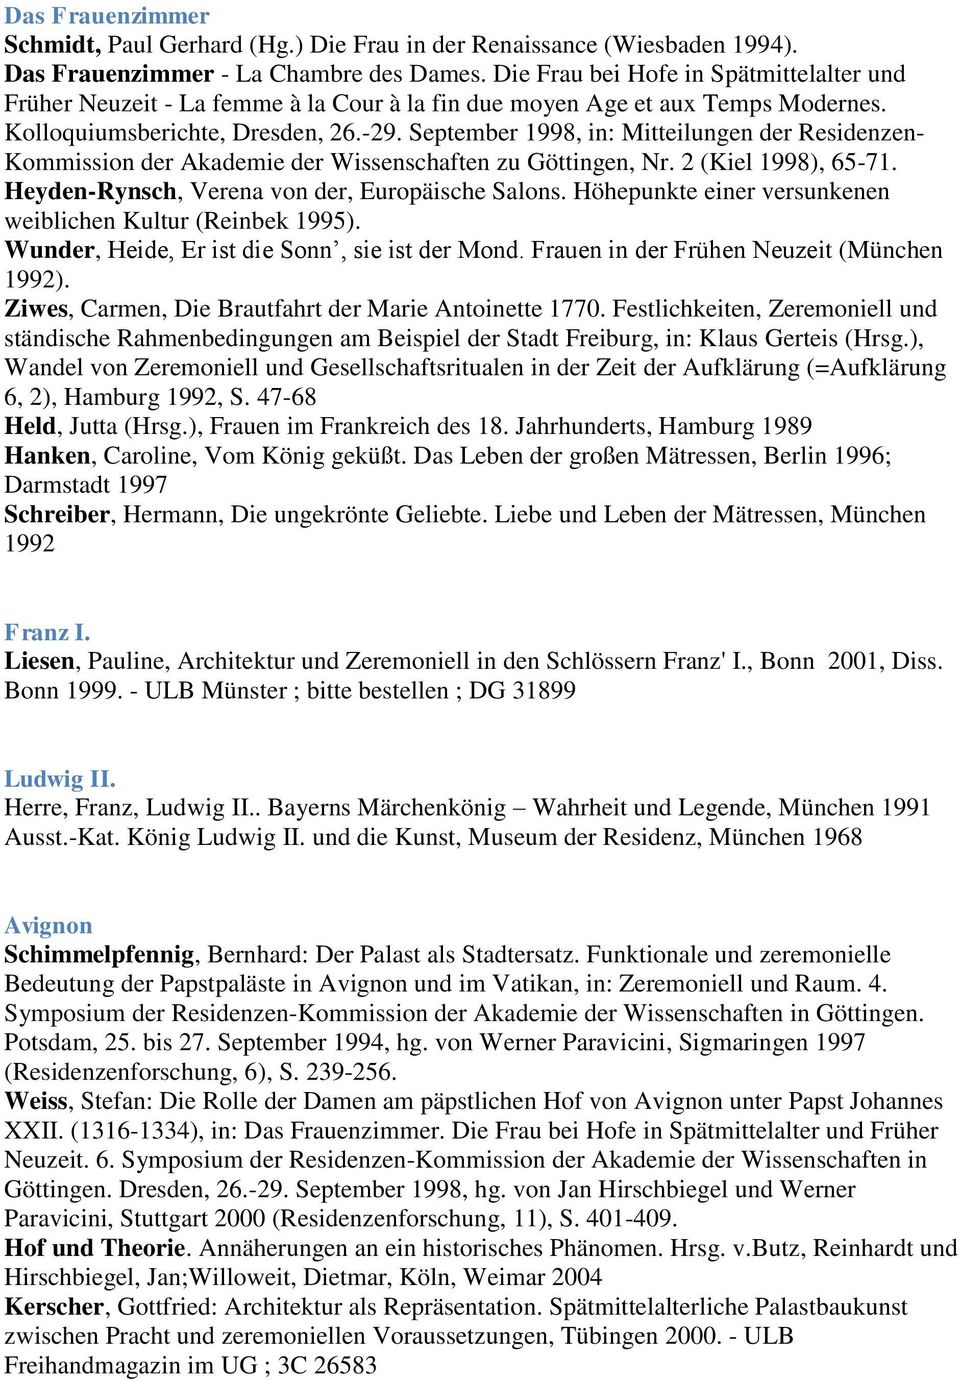 September 1998, in: Mitteilungen der Residenzen- Kommission der Akademie der Wissenschaften zu Göttingen, Nr. 2 (Kiel 1998), 65-71. Heyden-Rynsch, Verena von der, Europäische Salons.